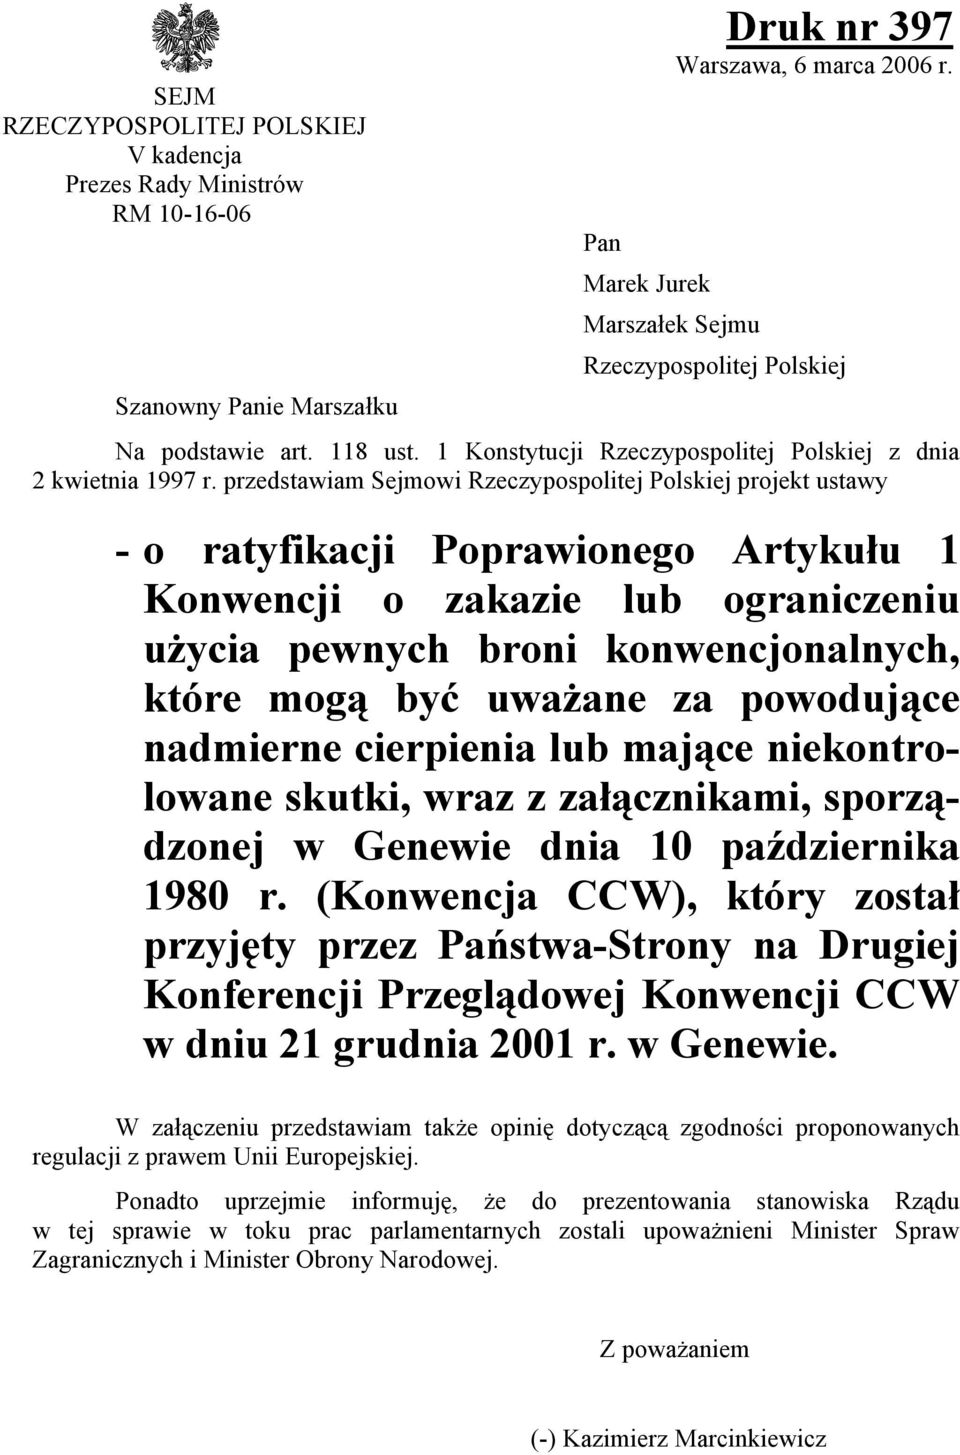 przedstawiam Sejmowi Rzeczypospolitej Polskiej projekt ustawy - o ratyfikacji Poprawionego Artykułu 1 Konwencji o zakazie lub ograniczeniu użycia pewnych broni konwencjonalnych, które mogą być